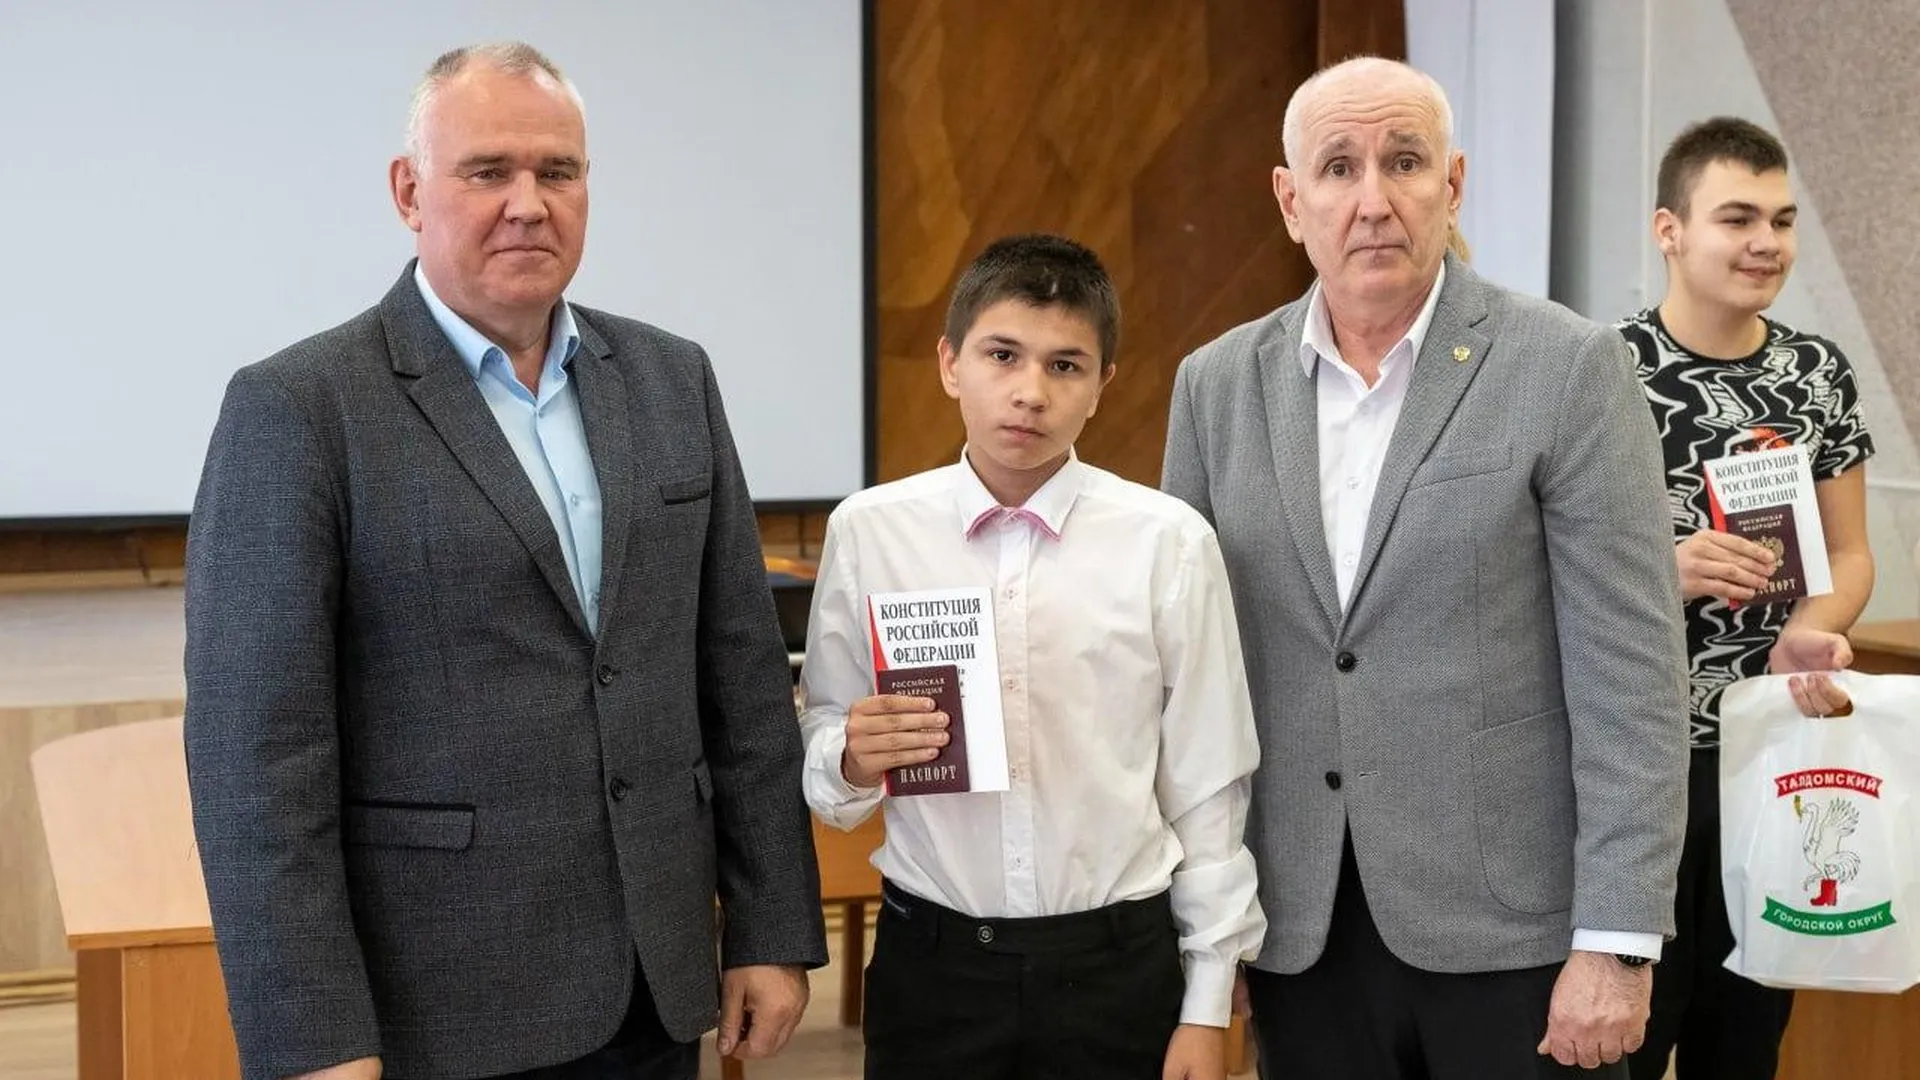 Юным жителям Талдомского городского округа в торжественной обстановке впервые вручили паспорта